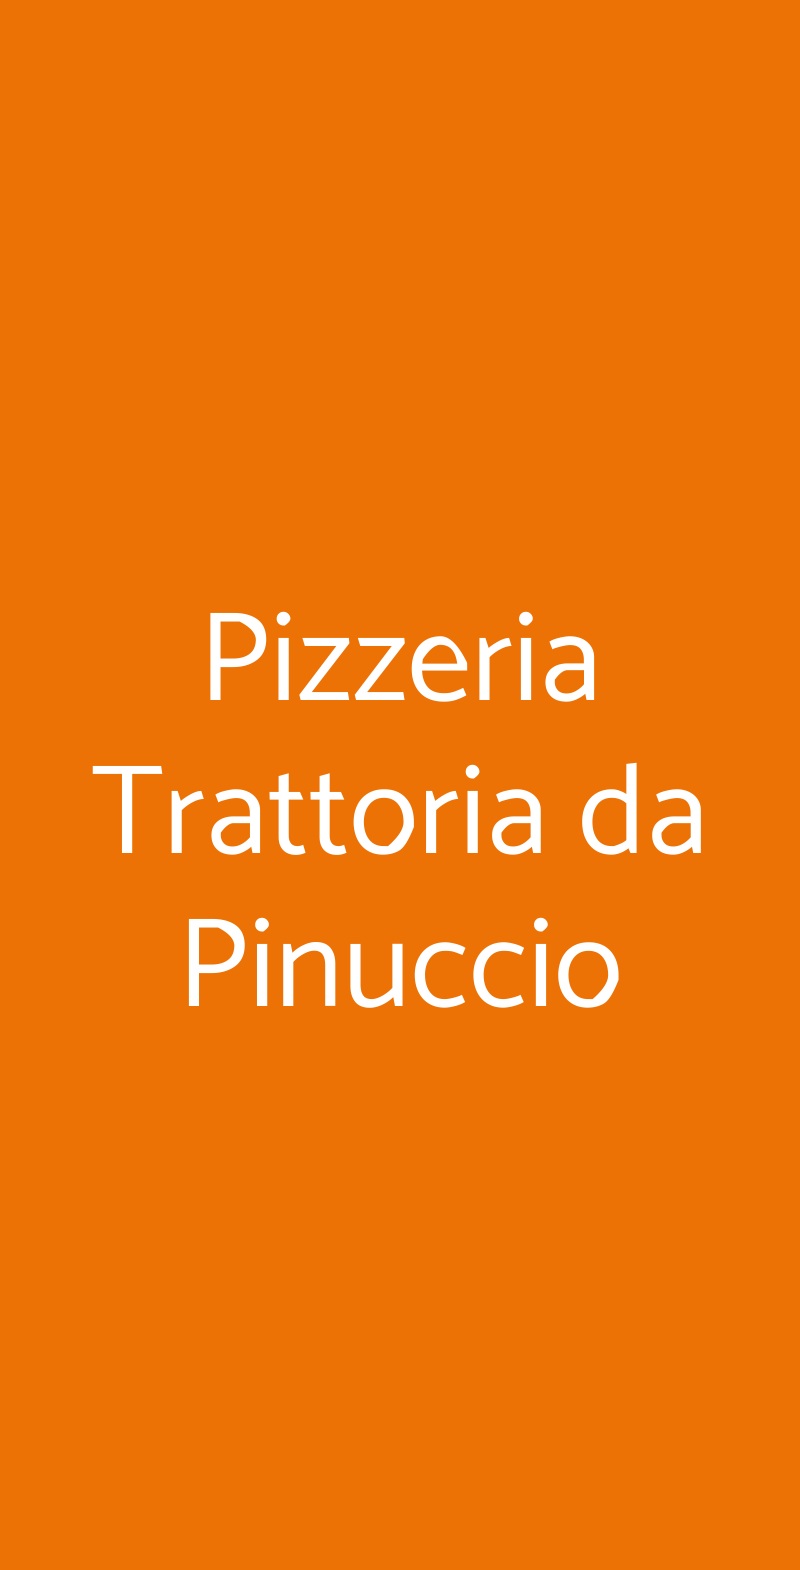 Pizzeria Trattoria da Pinuccio Roma menù 1 pagina